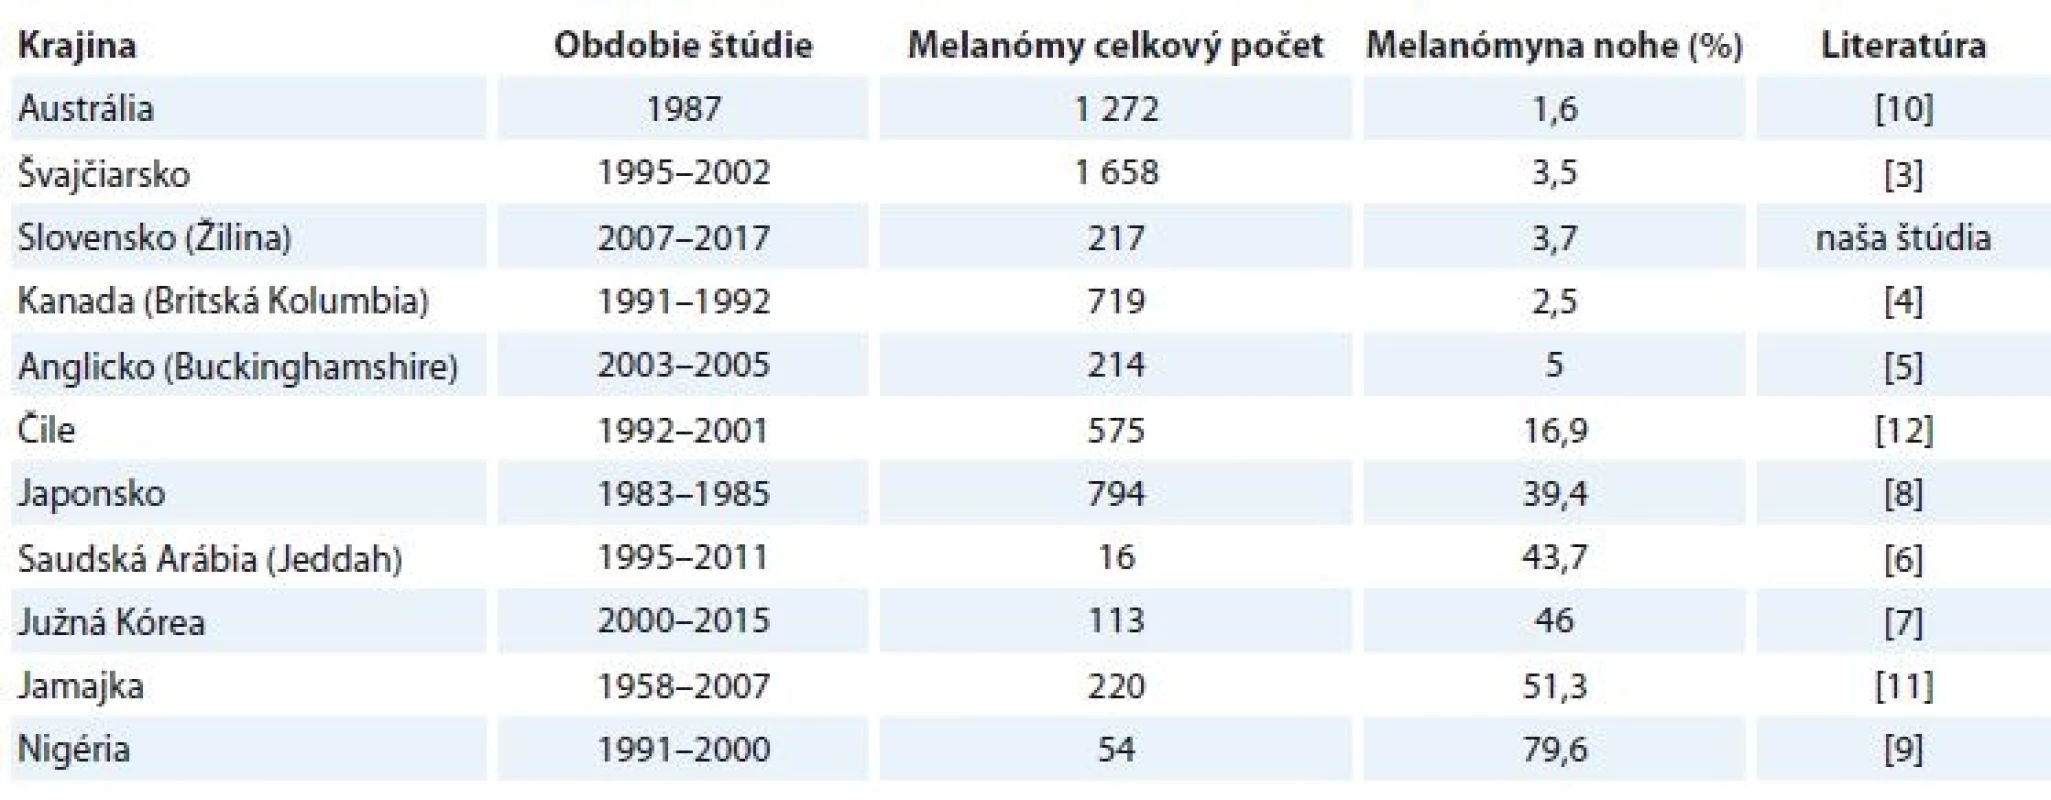 Percentuálne zastúpenie melanómov lokalizovaných na nohe v štúdiách z rôznych krajín [3–12].